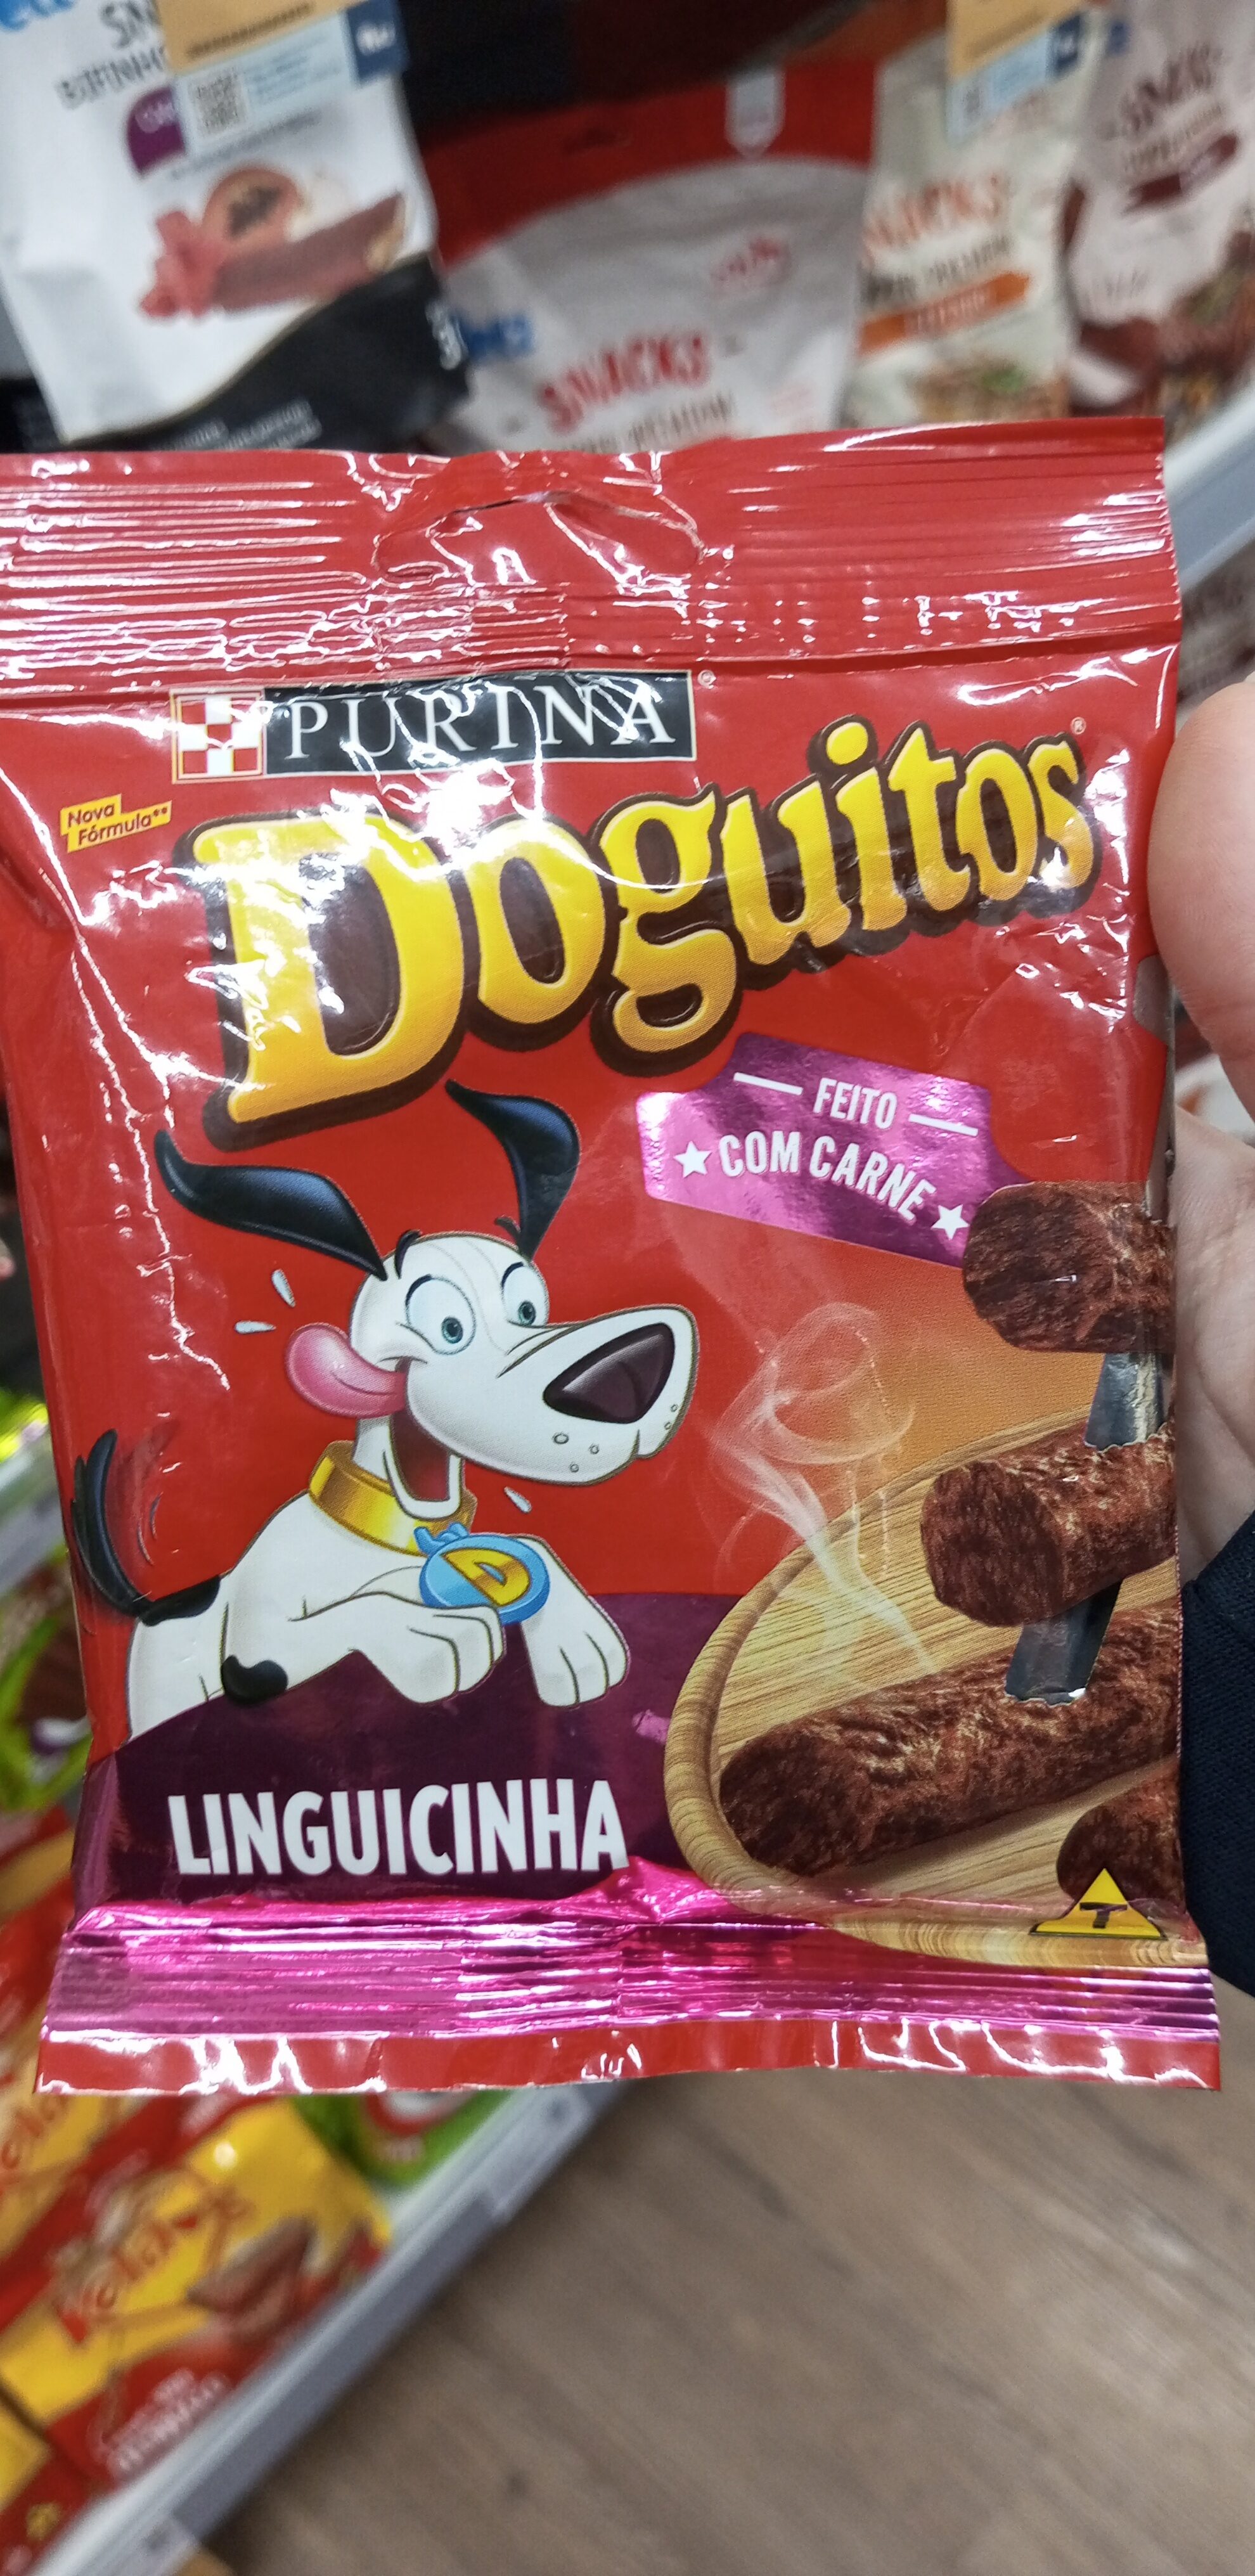 Snack cães doguitos 45g linguicinha - Product - pt